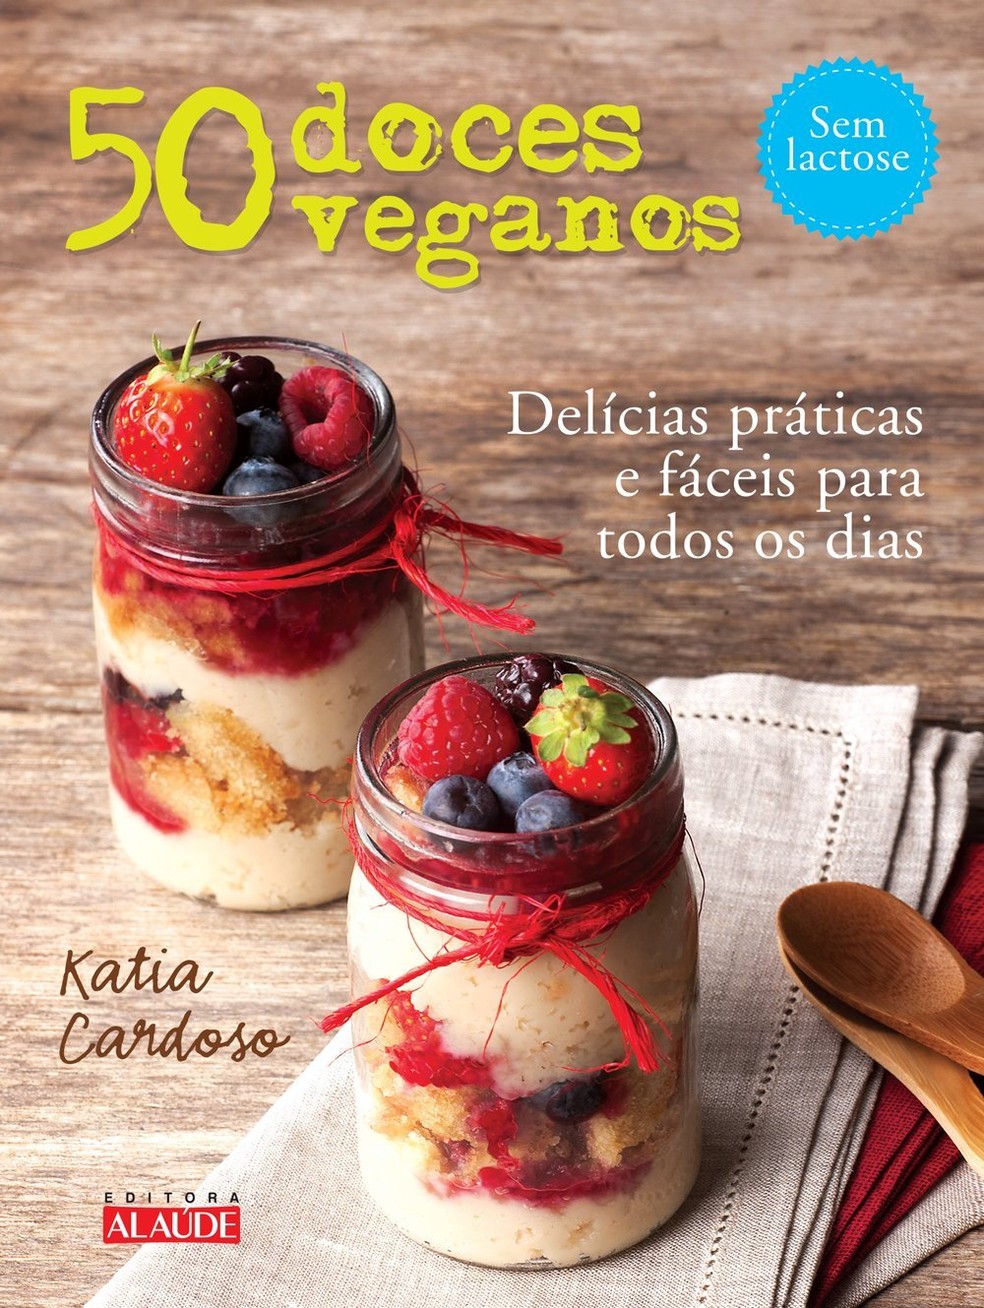 50 doces veganos: Delícias fáceis e práticas para todos os dias, à venda na Amazon — Foto: Divulgação